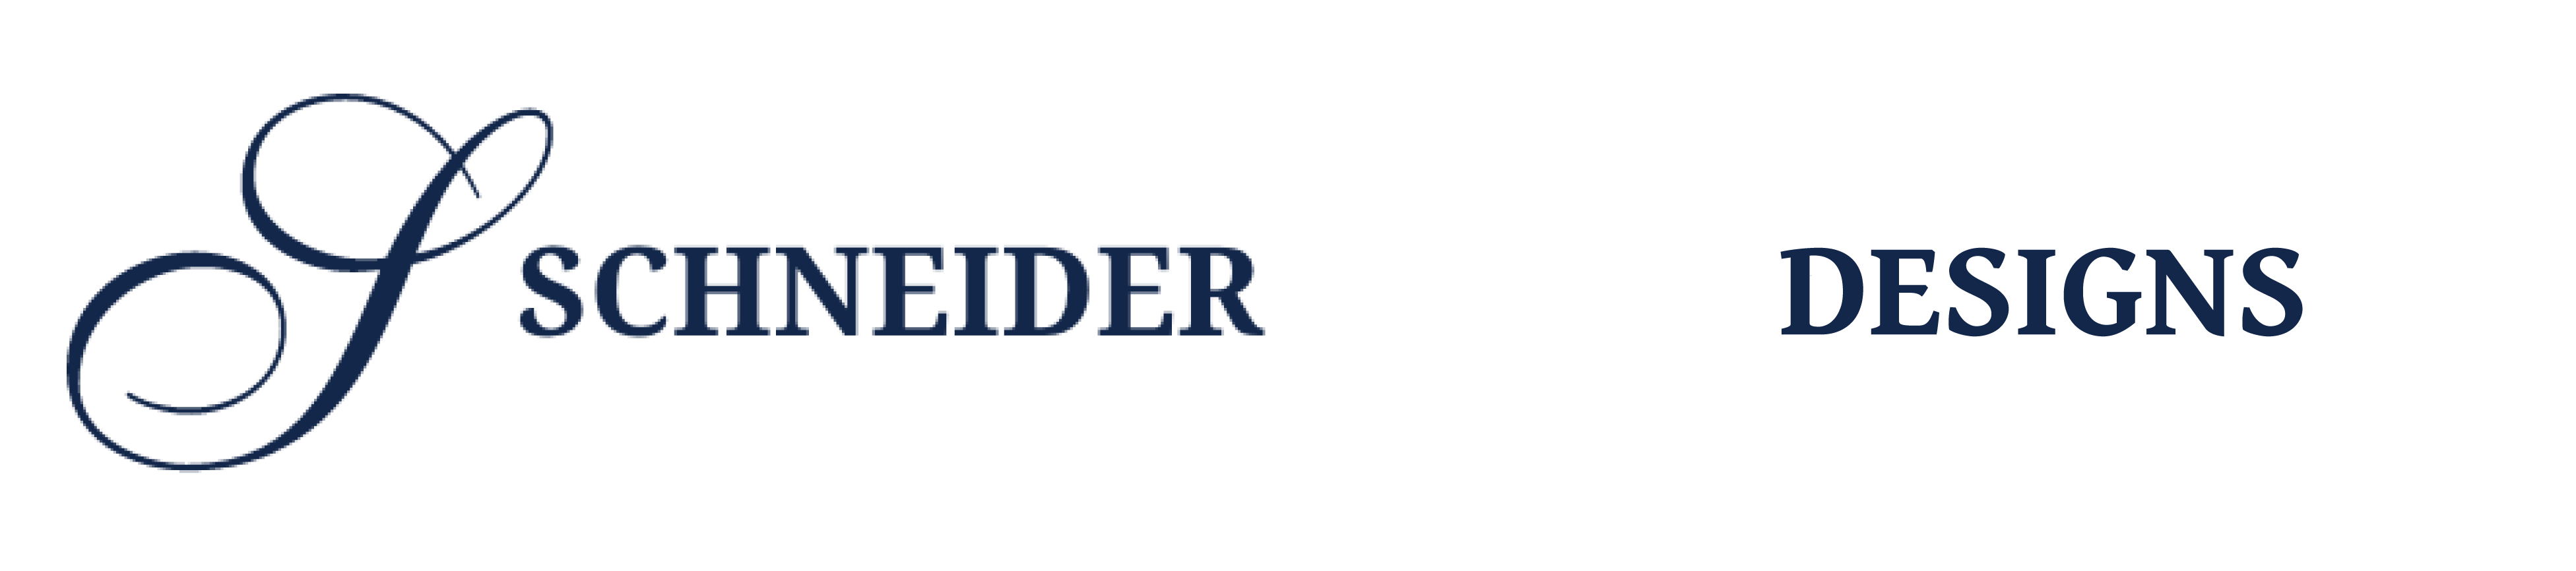 Schneider Dental Designs